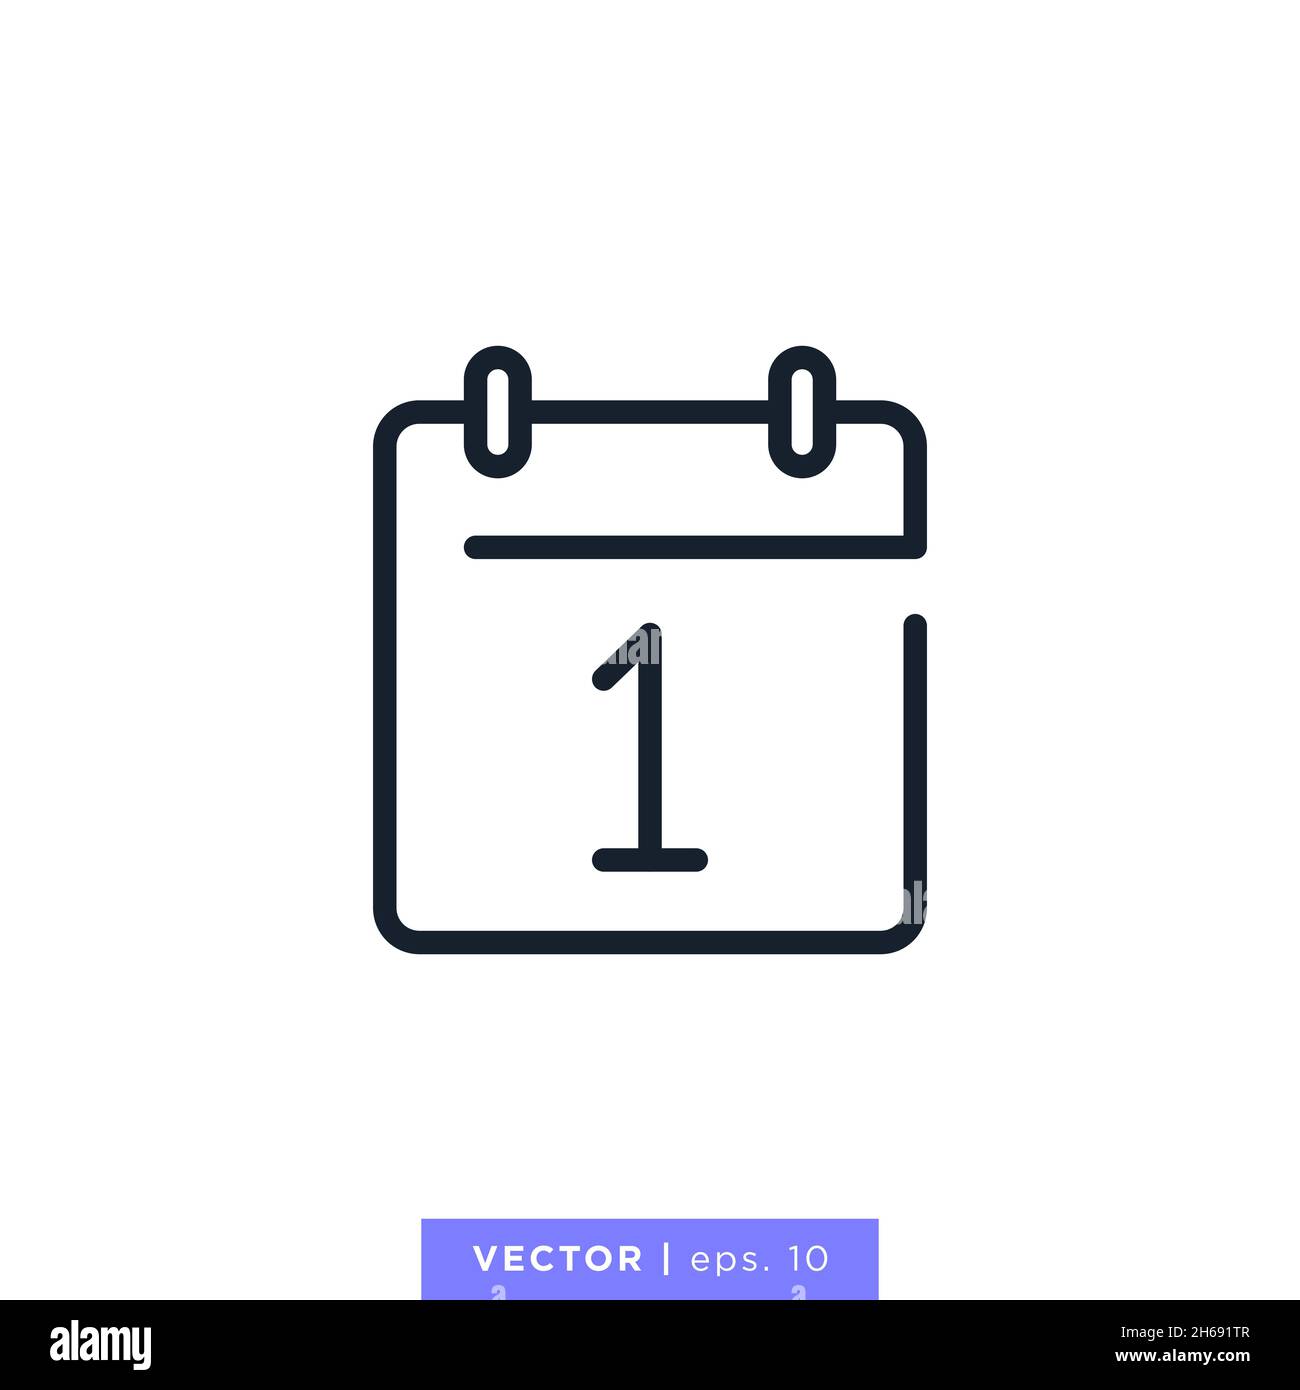 Calendar icon vector stock illustration design template. Vector eps 10. Stock Vector